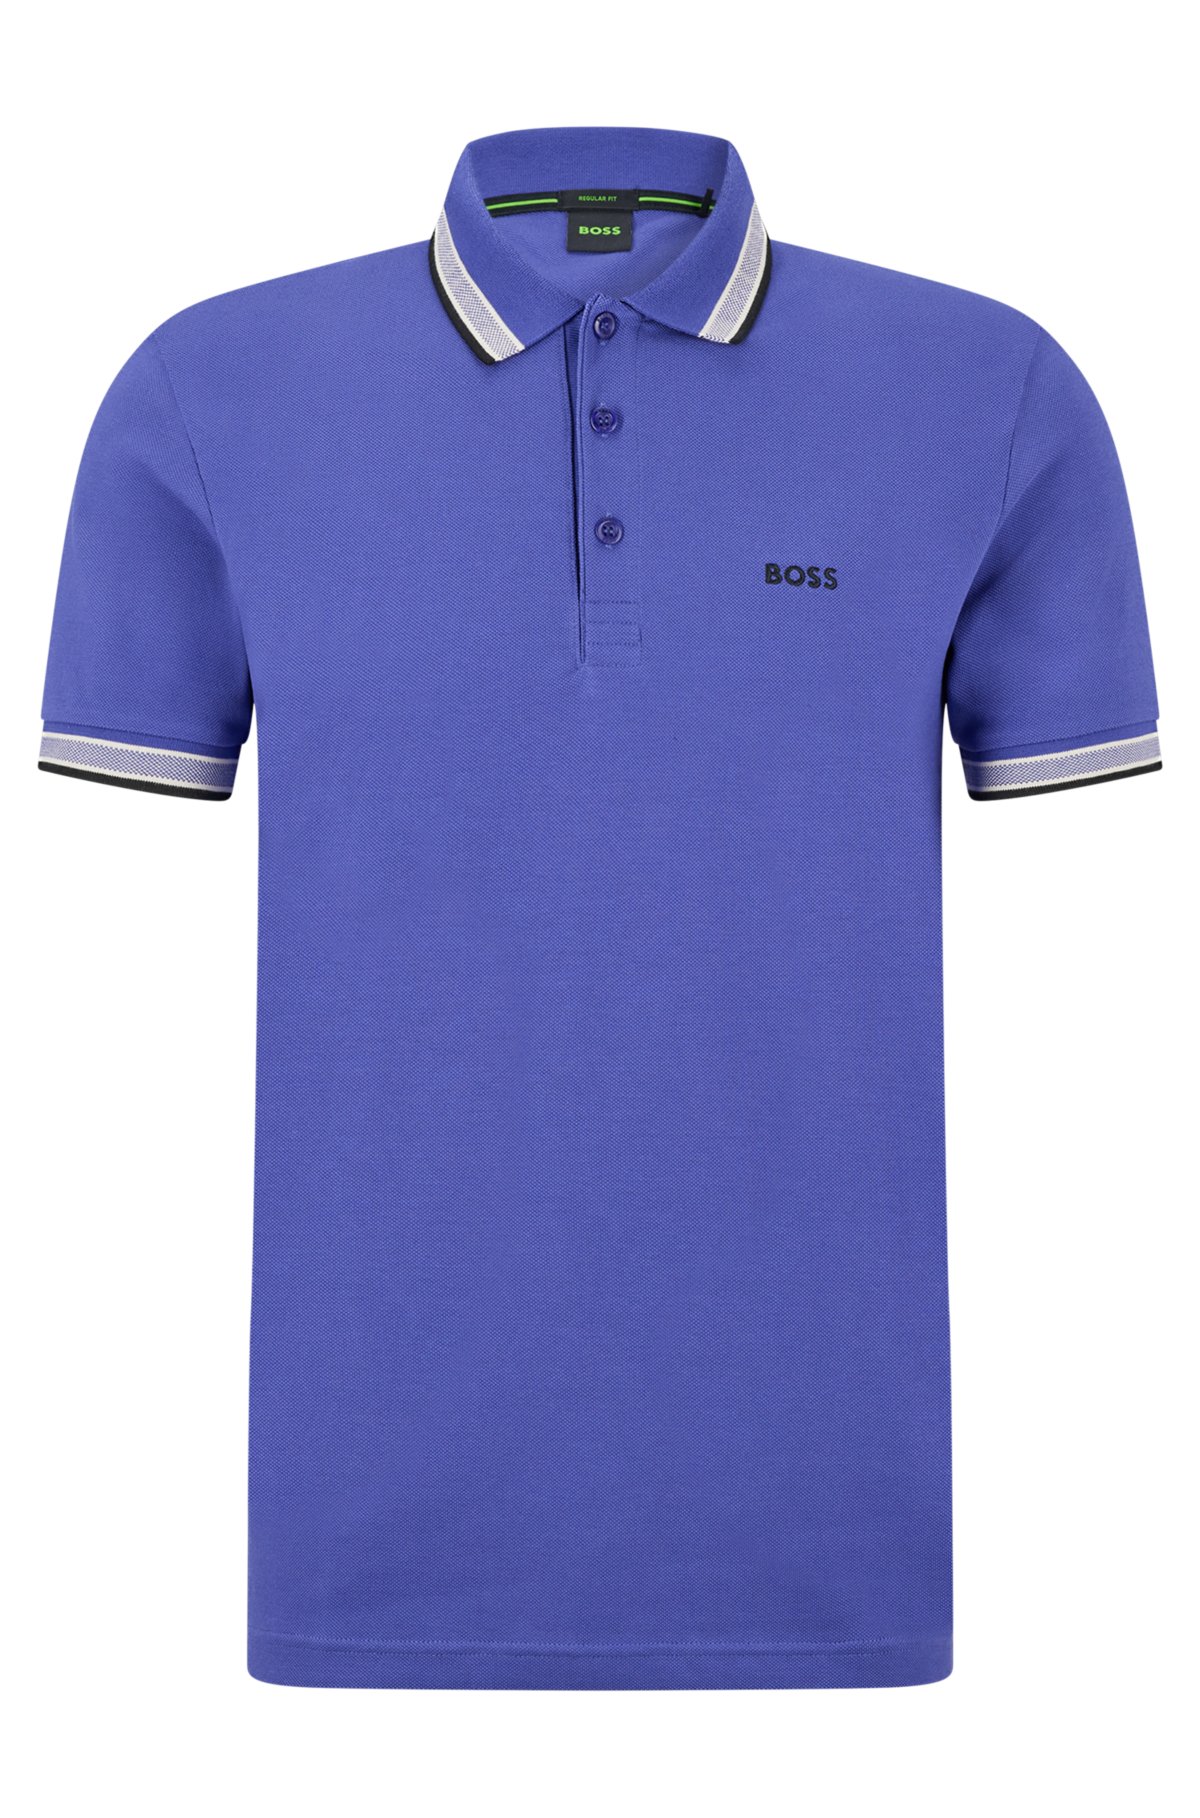 nyt år tråd Enlighten BOSS - Cotton polo shirt with logo